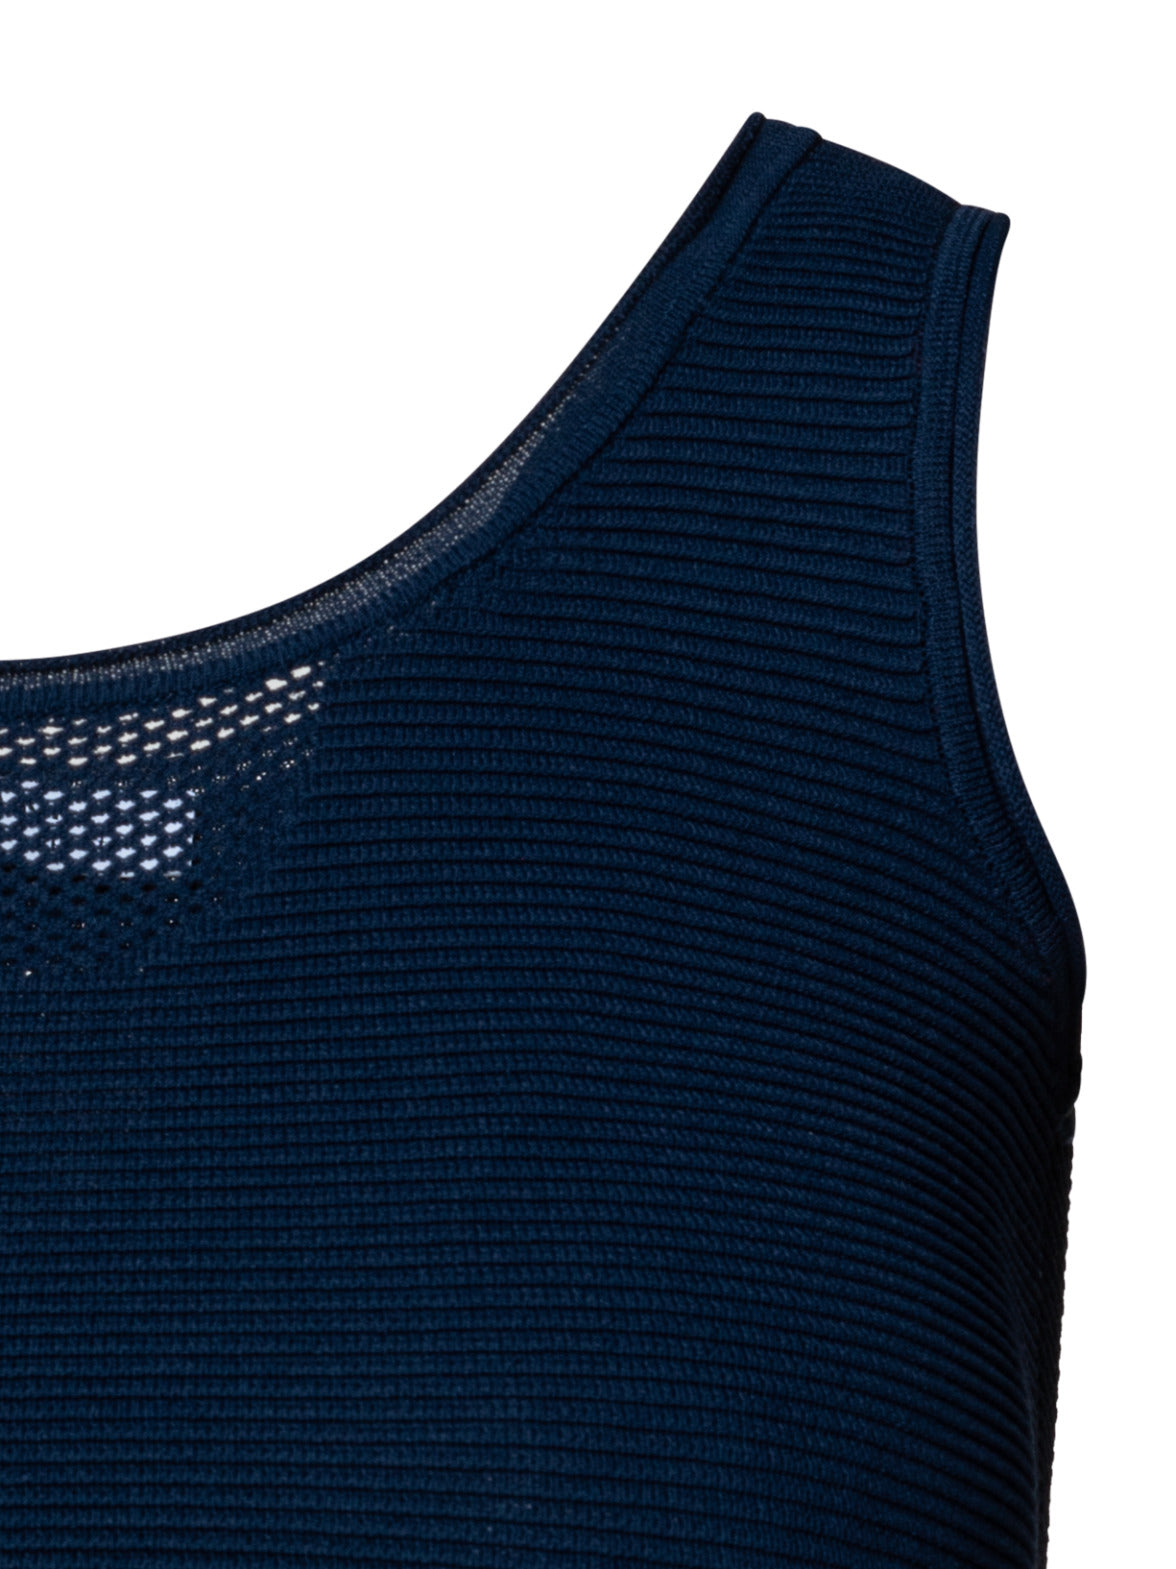 Women's Blue Knit Activewear Tank Tops